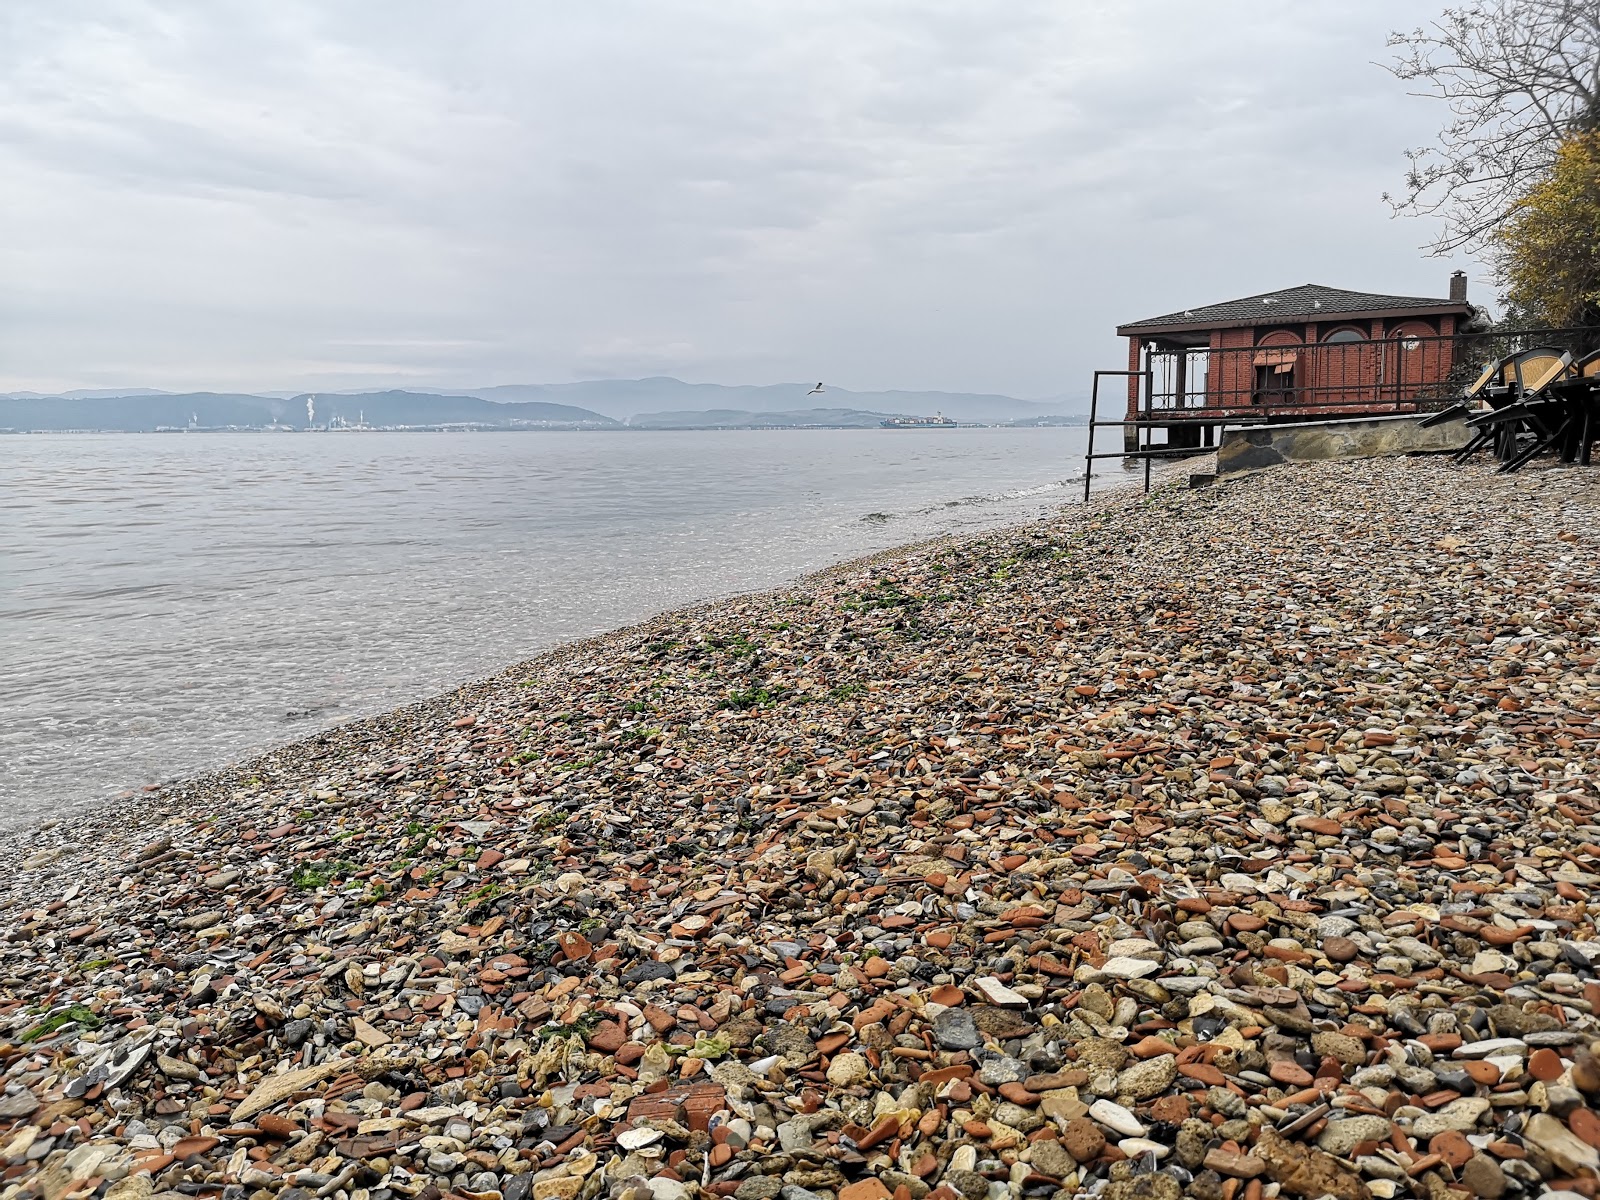 Darıca Plajı II'in fotoğrafı kahverengi çakıl yüzey ile